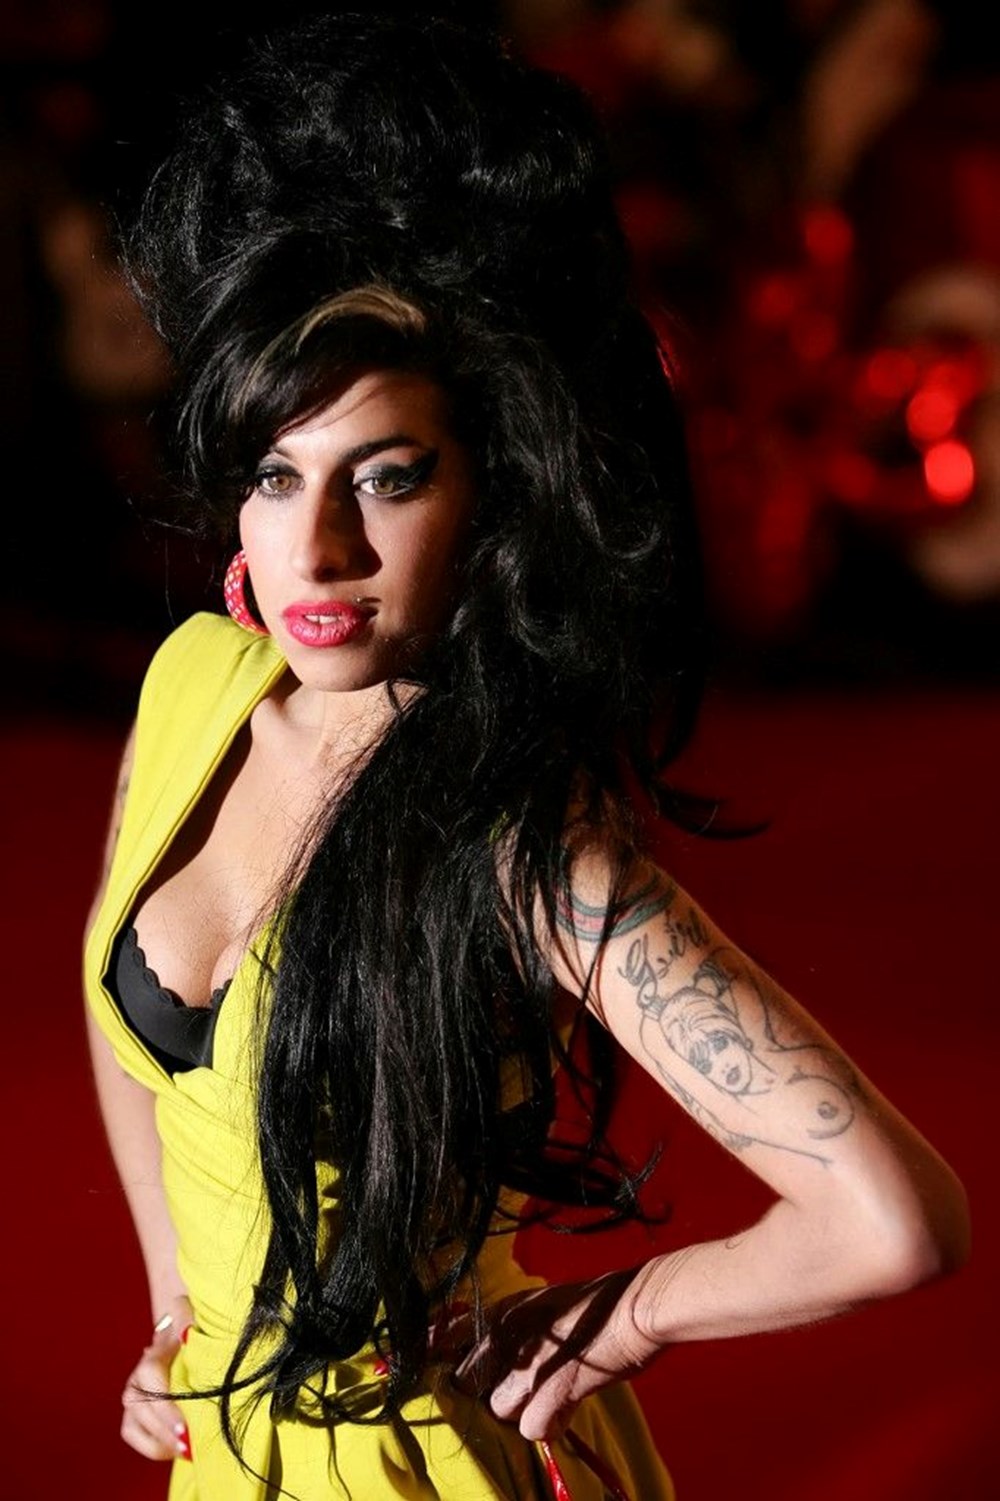 En iyi ayrılık şarkıları araştırması: Amy Winehouse zirvede - 7